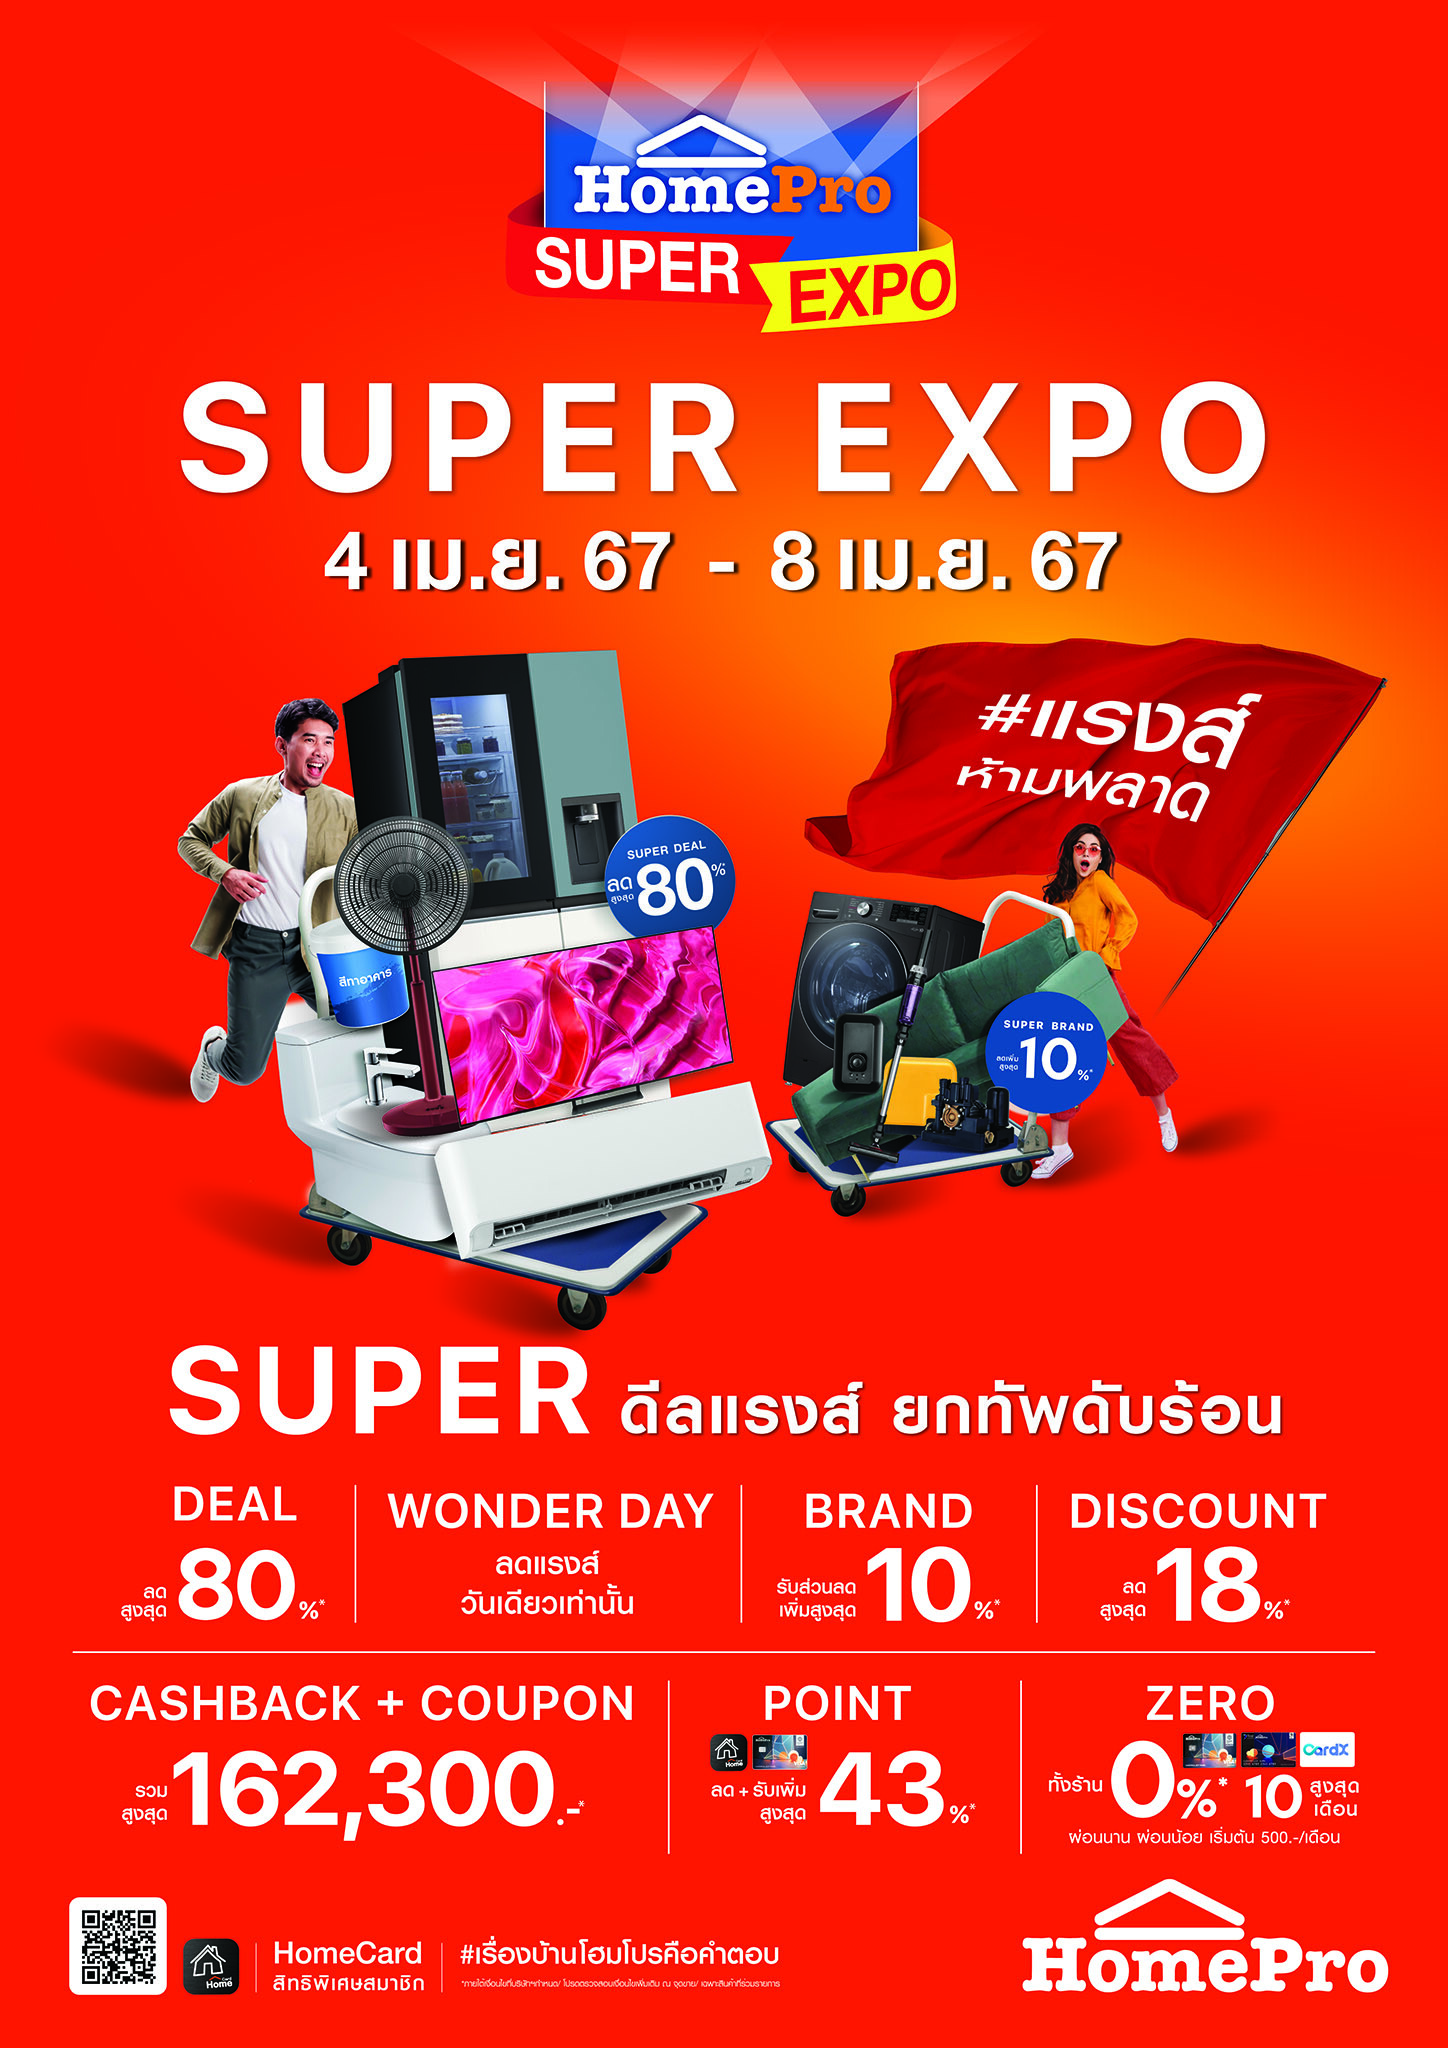 ยกทัพดับร้อน กับ "HomePro SUPER EXPO" #แรงส์ห้ามพลาด Super ดีลแรงส์ สินค้าเรื่องบ้านลดสูงสุด 80% คืนกำไรจัดเต็ม 162,300 บาท! 4 - 8 เม.ย. 67 นี้